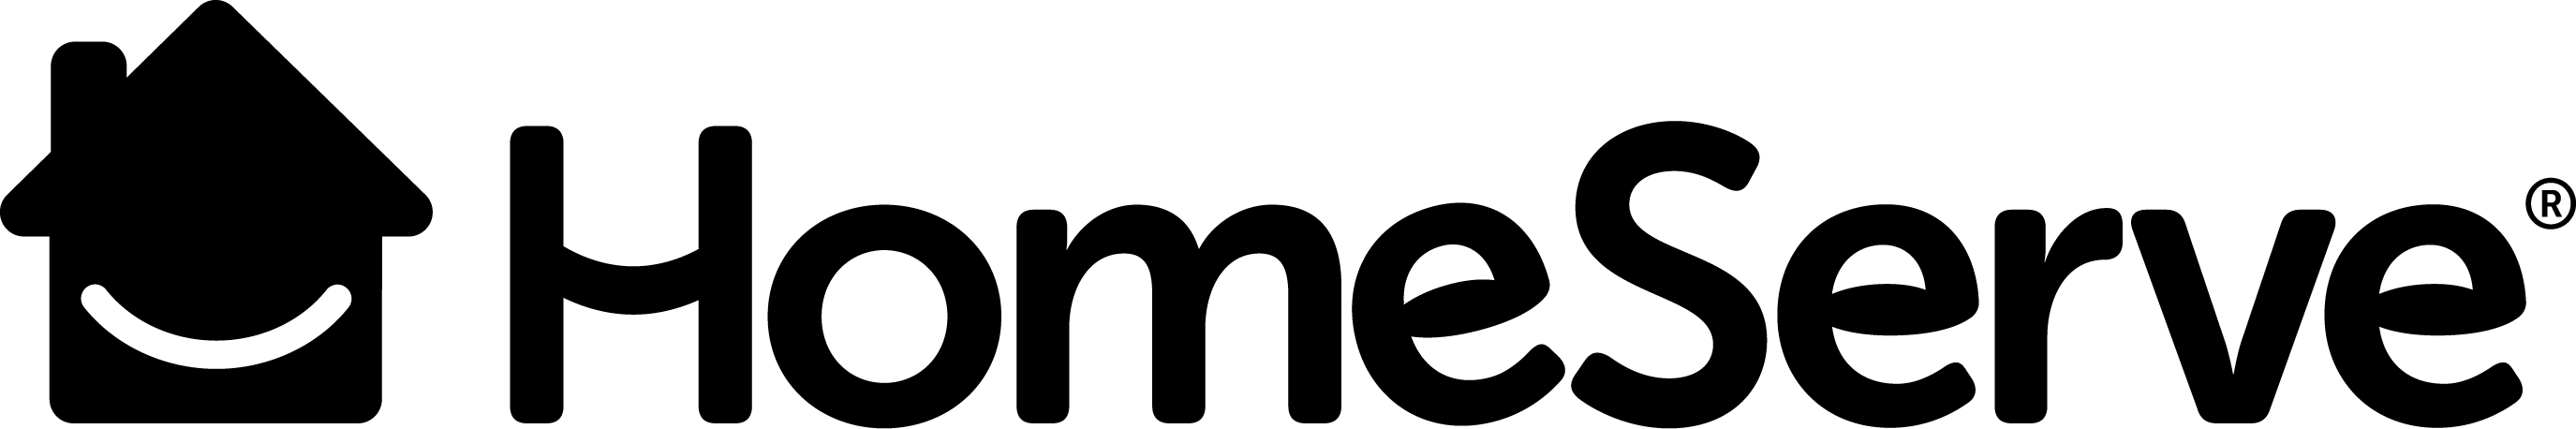 Homeserve logo